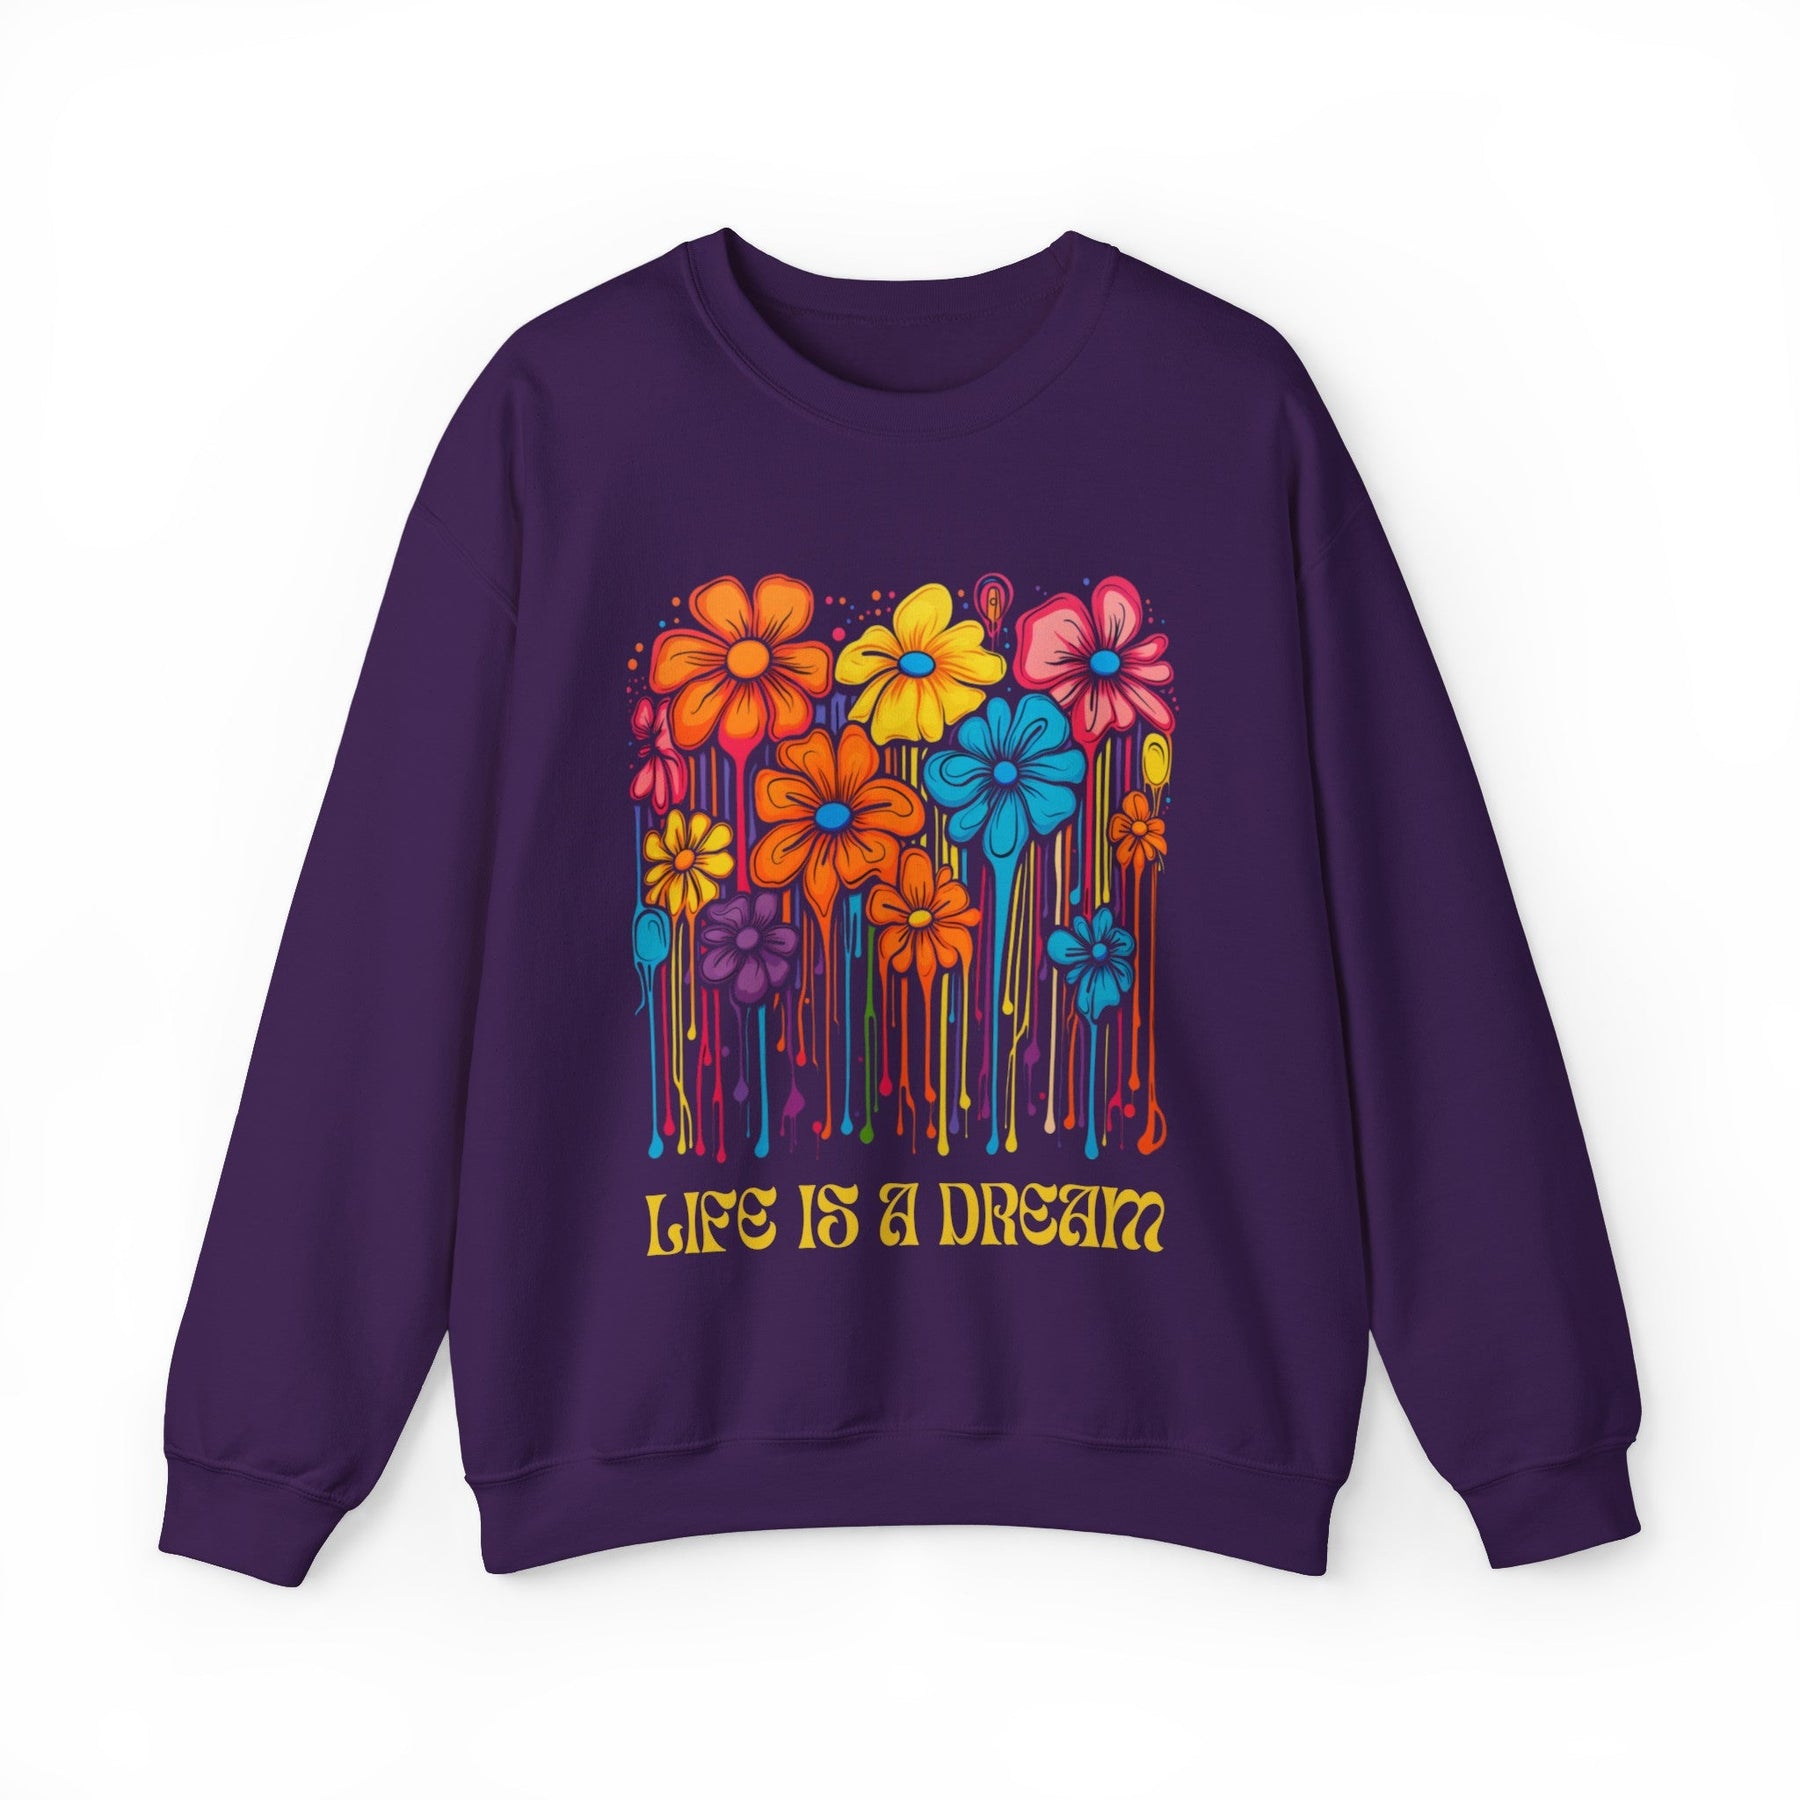 Life is a Dream Acid Flowers Sweatshirt - Goth Cloth Co.Sweatshirt30493011283151238766